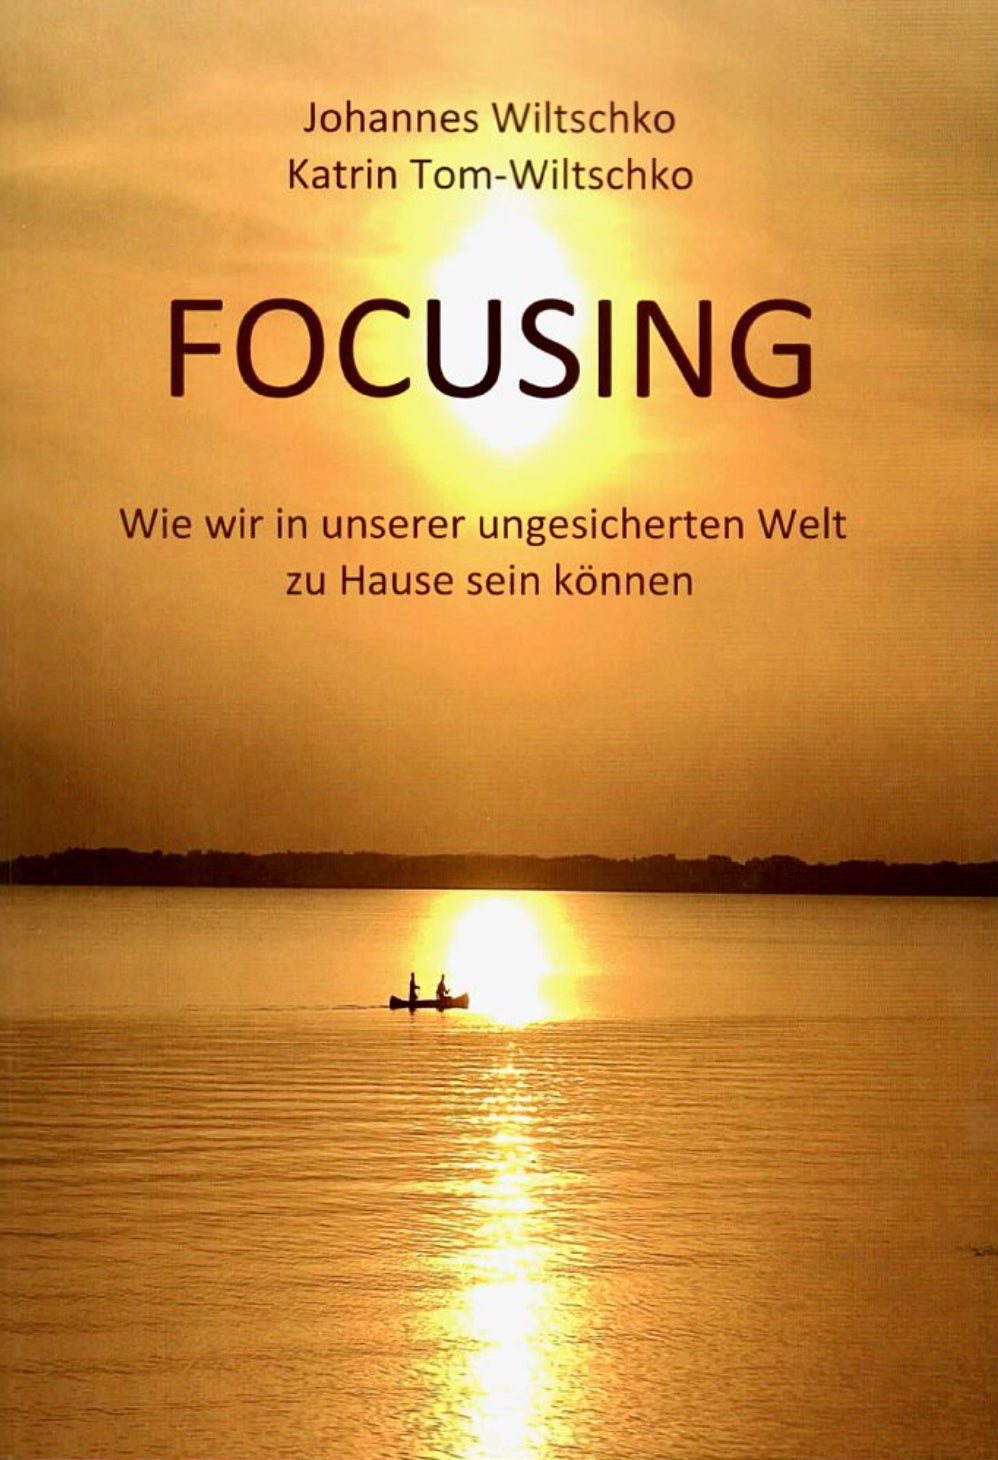 Focusing: Wie wir in einer ungesicherten Welt zu Hause sein können (Focusing: How to be at home in an insecure world)